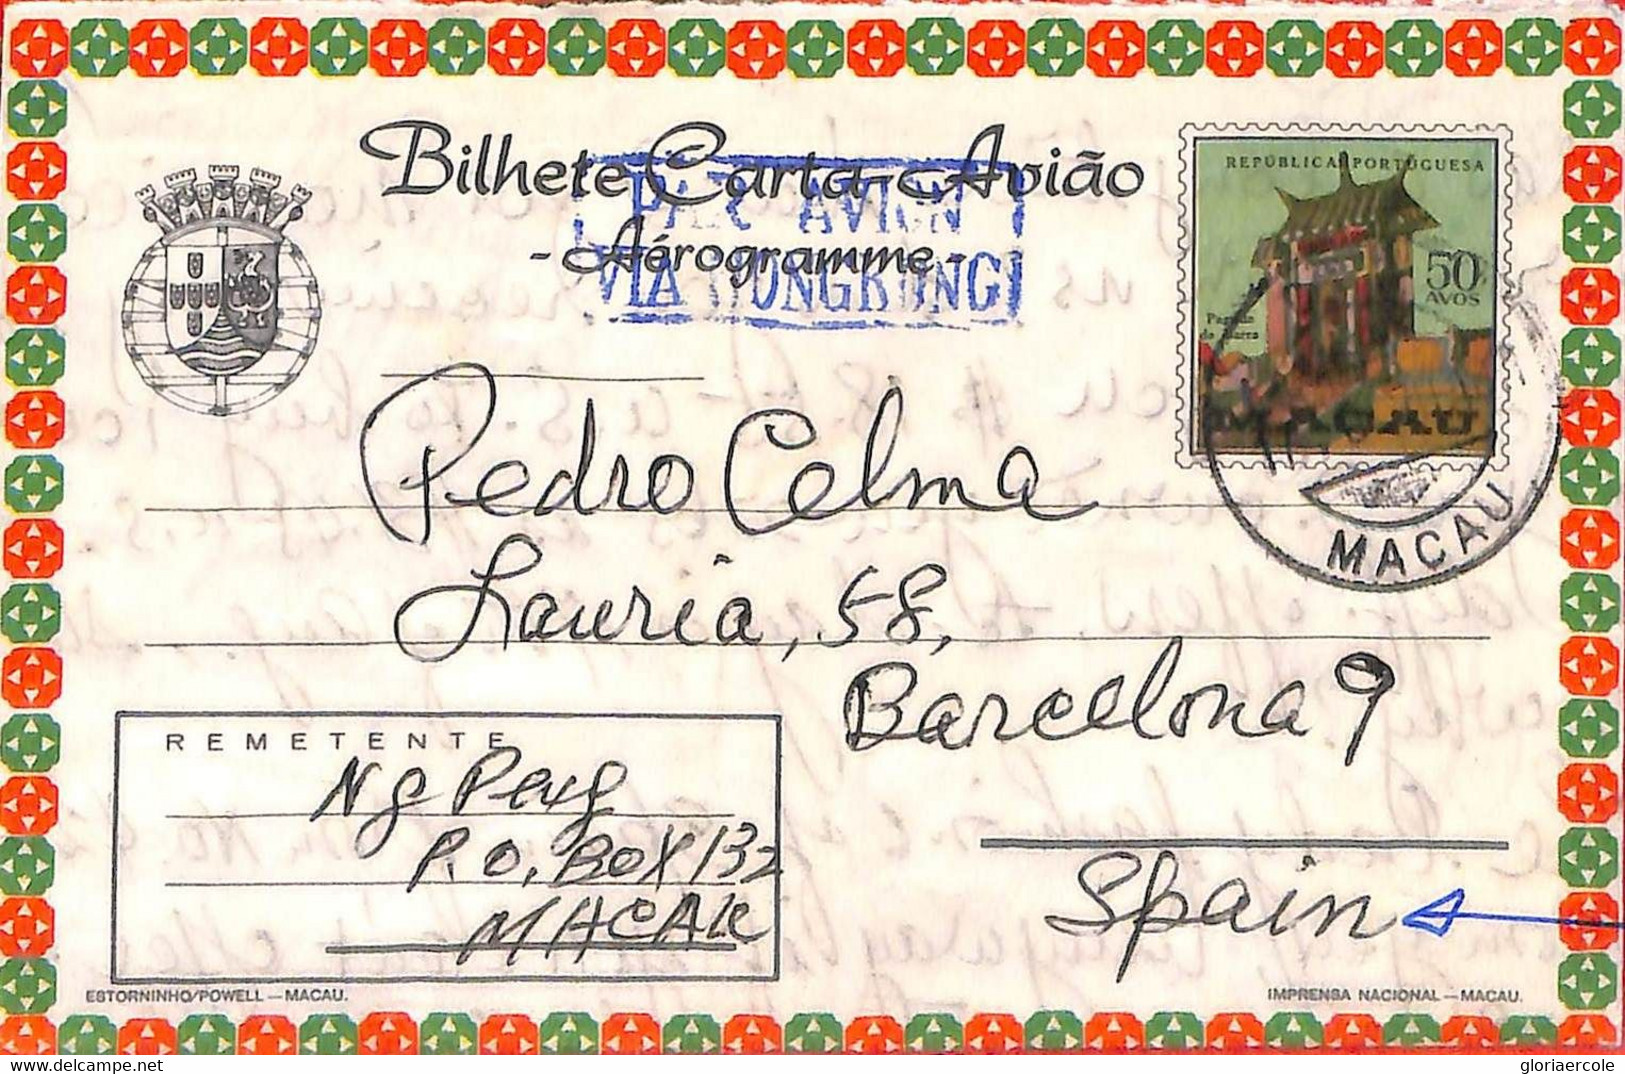 Aa6753   - MACAU Macao   POSTAL HISTORY - Stationery AEROGRAMME To SPAIN 1970'S - Postal Stationery